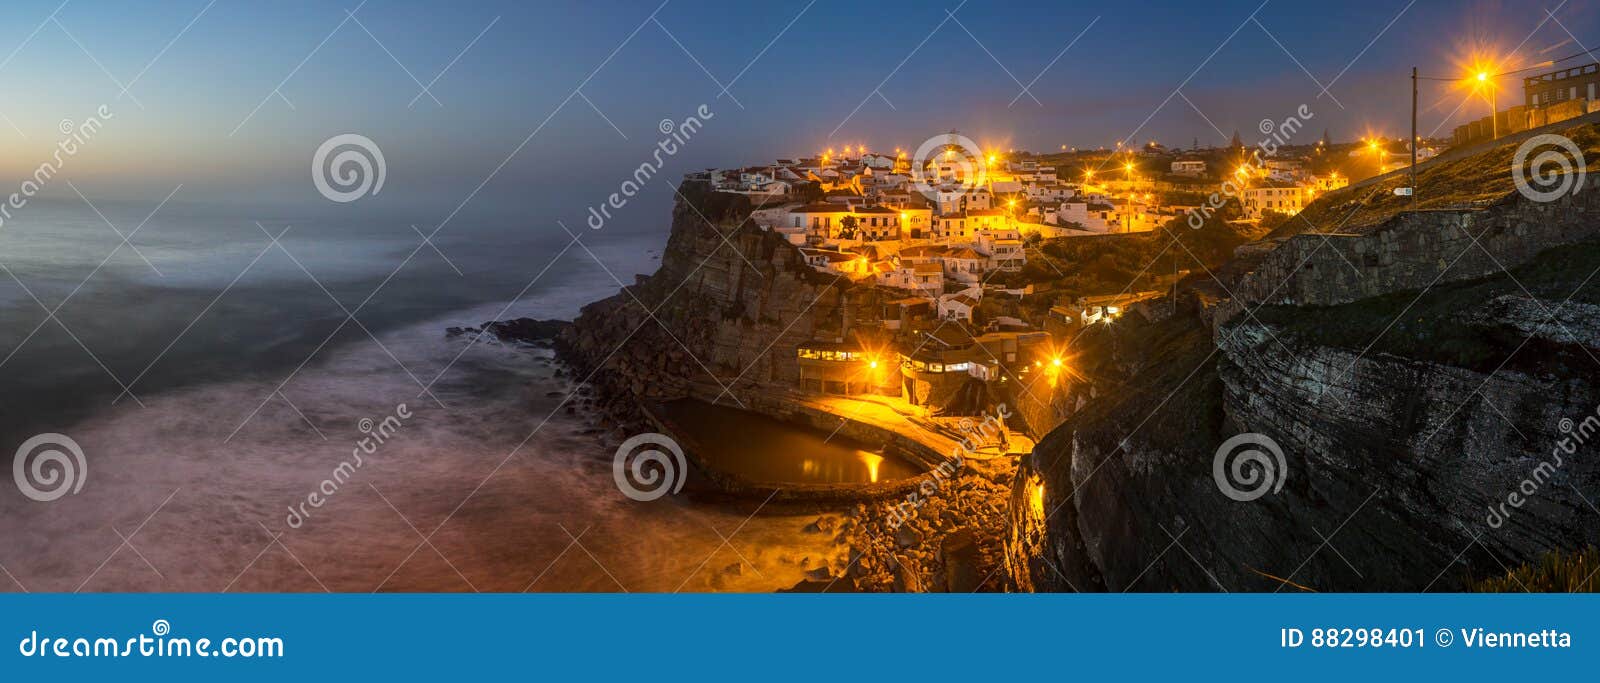 azenhas do mar, portugal at night